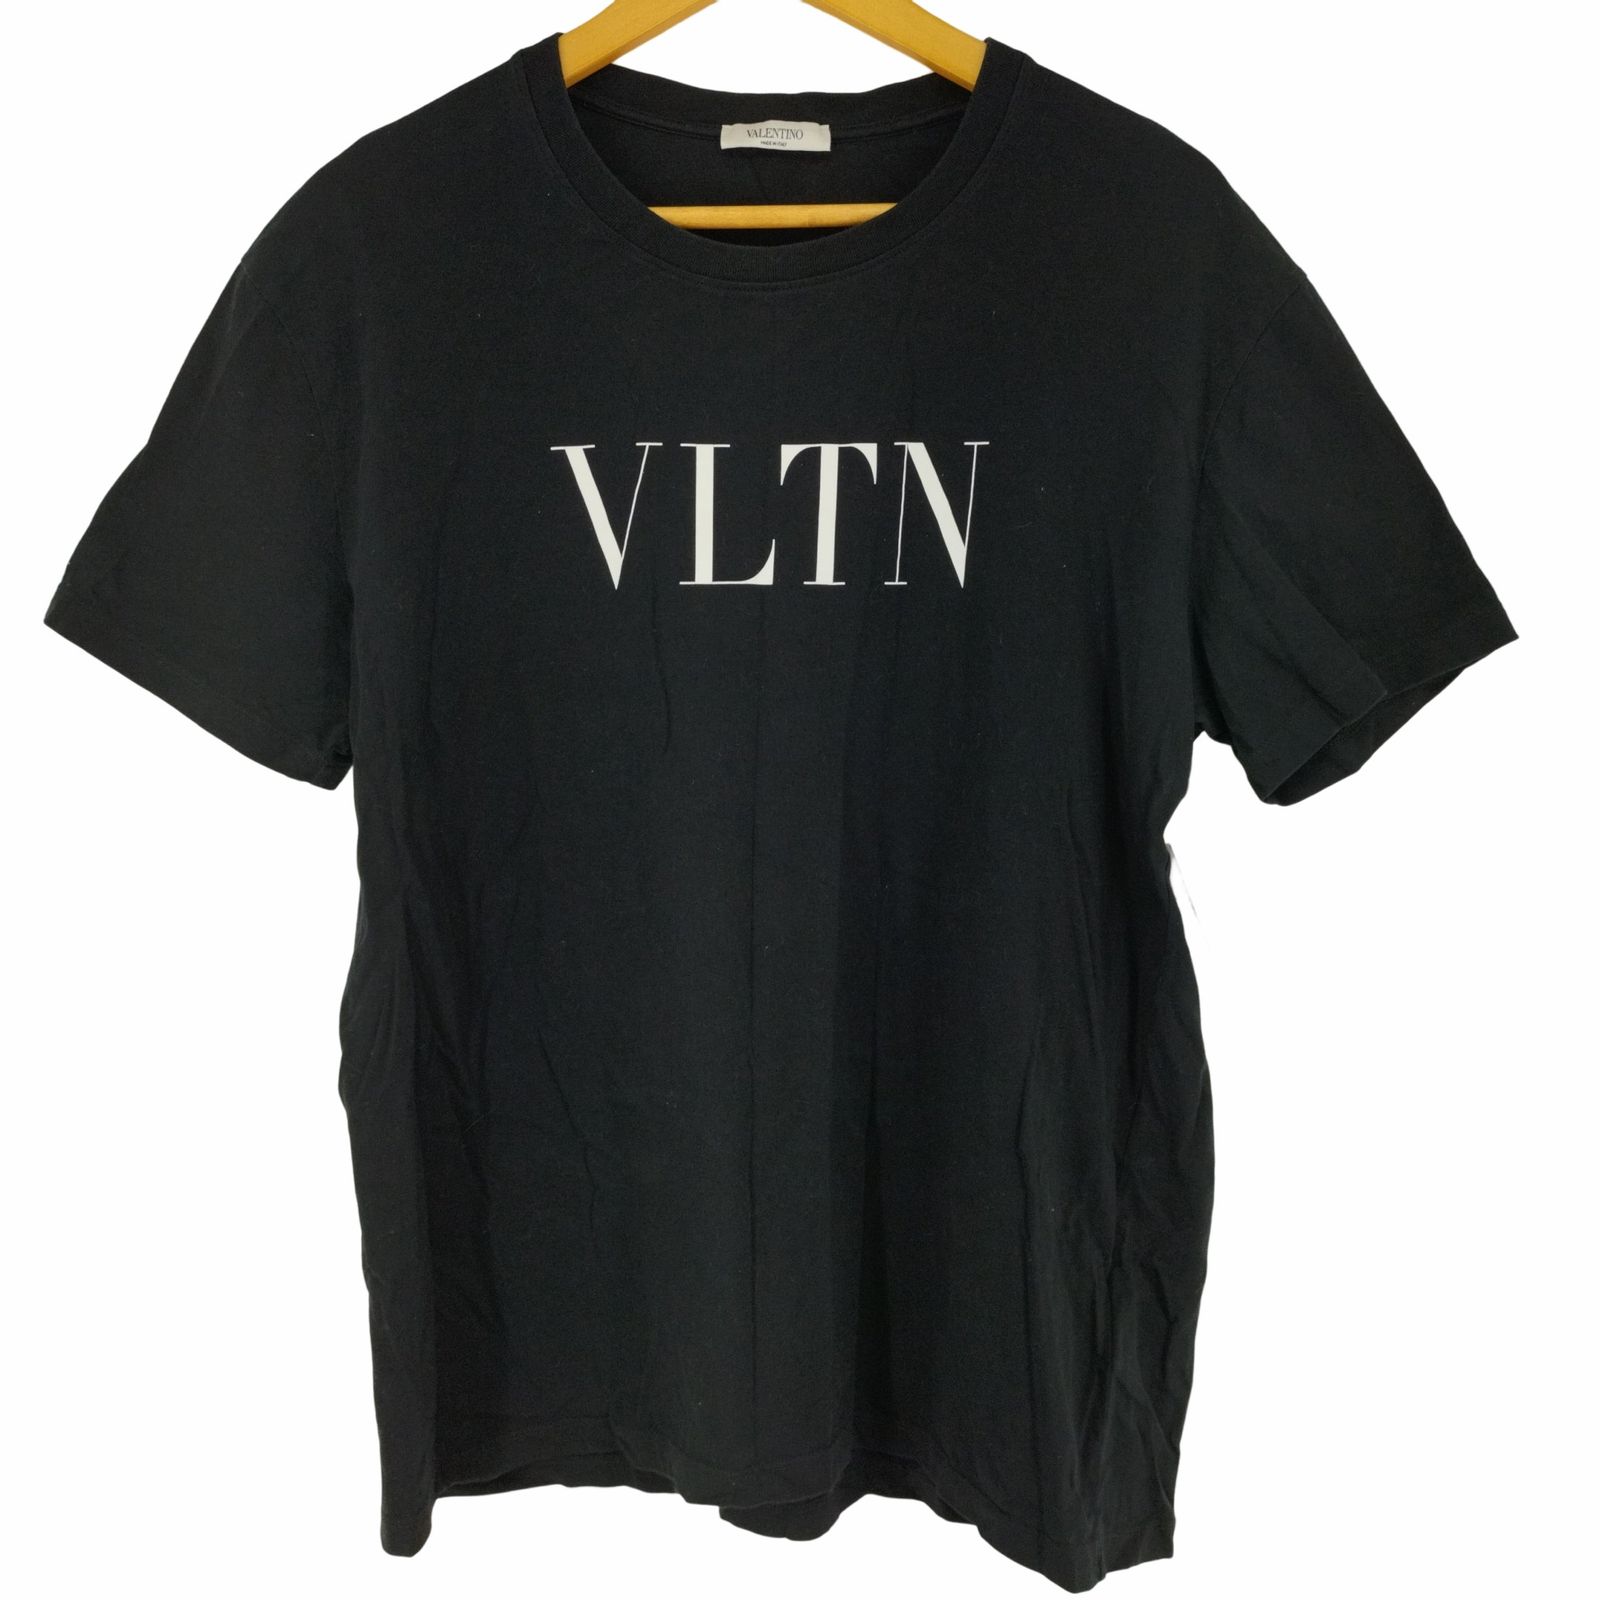 ヴァレンティノ Valentino 19SS VLTNロゴプリントTシャツ メンズ L ...